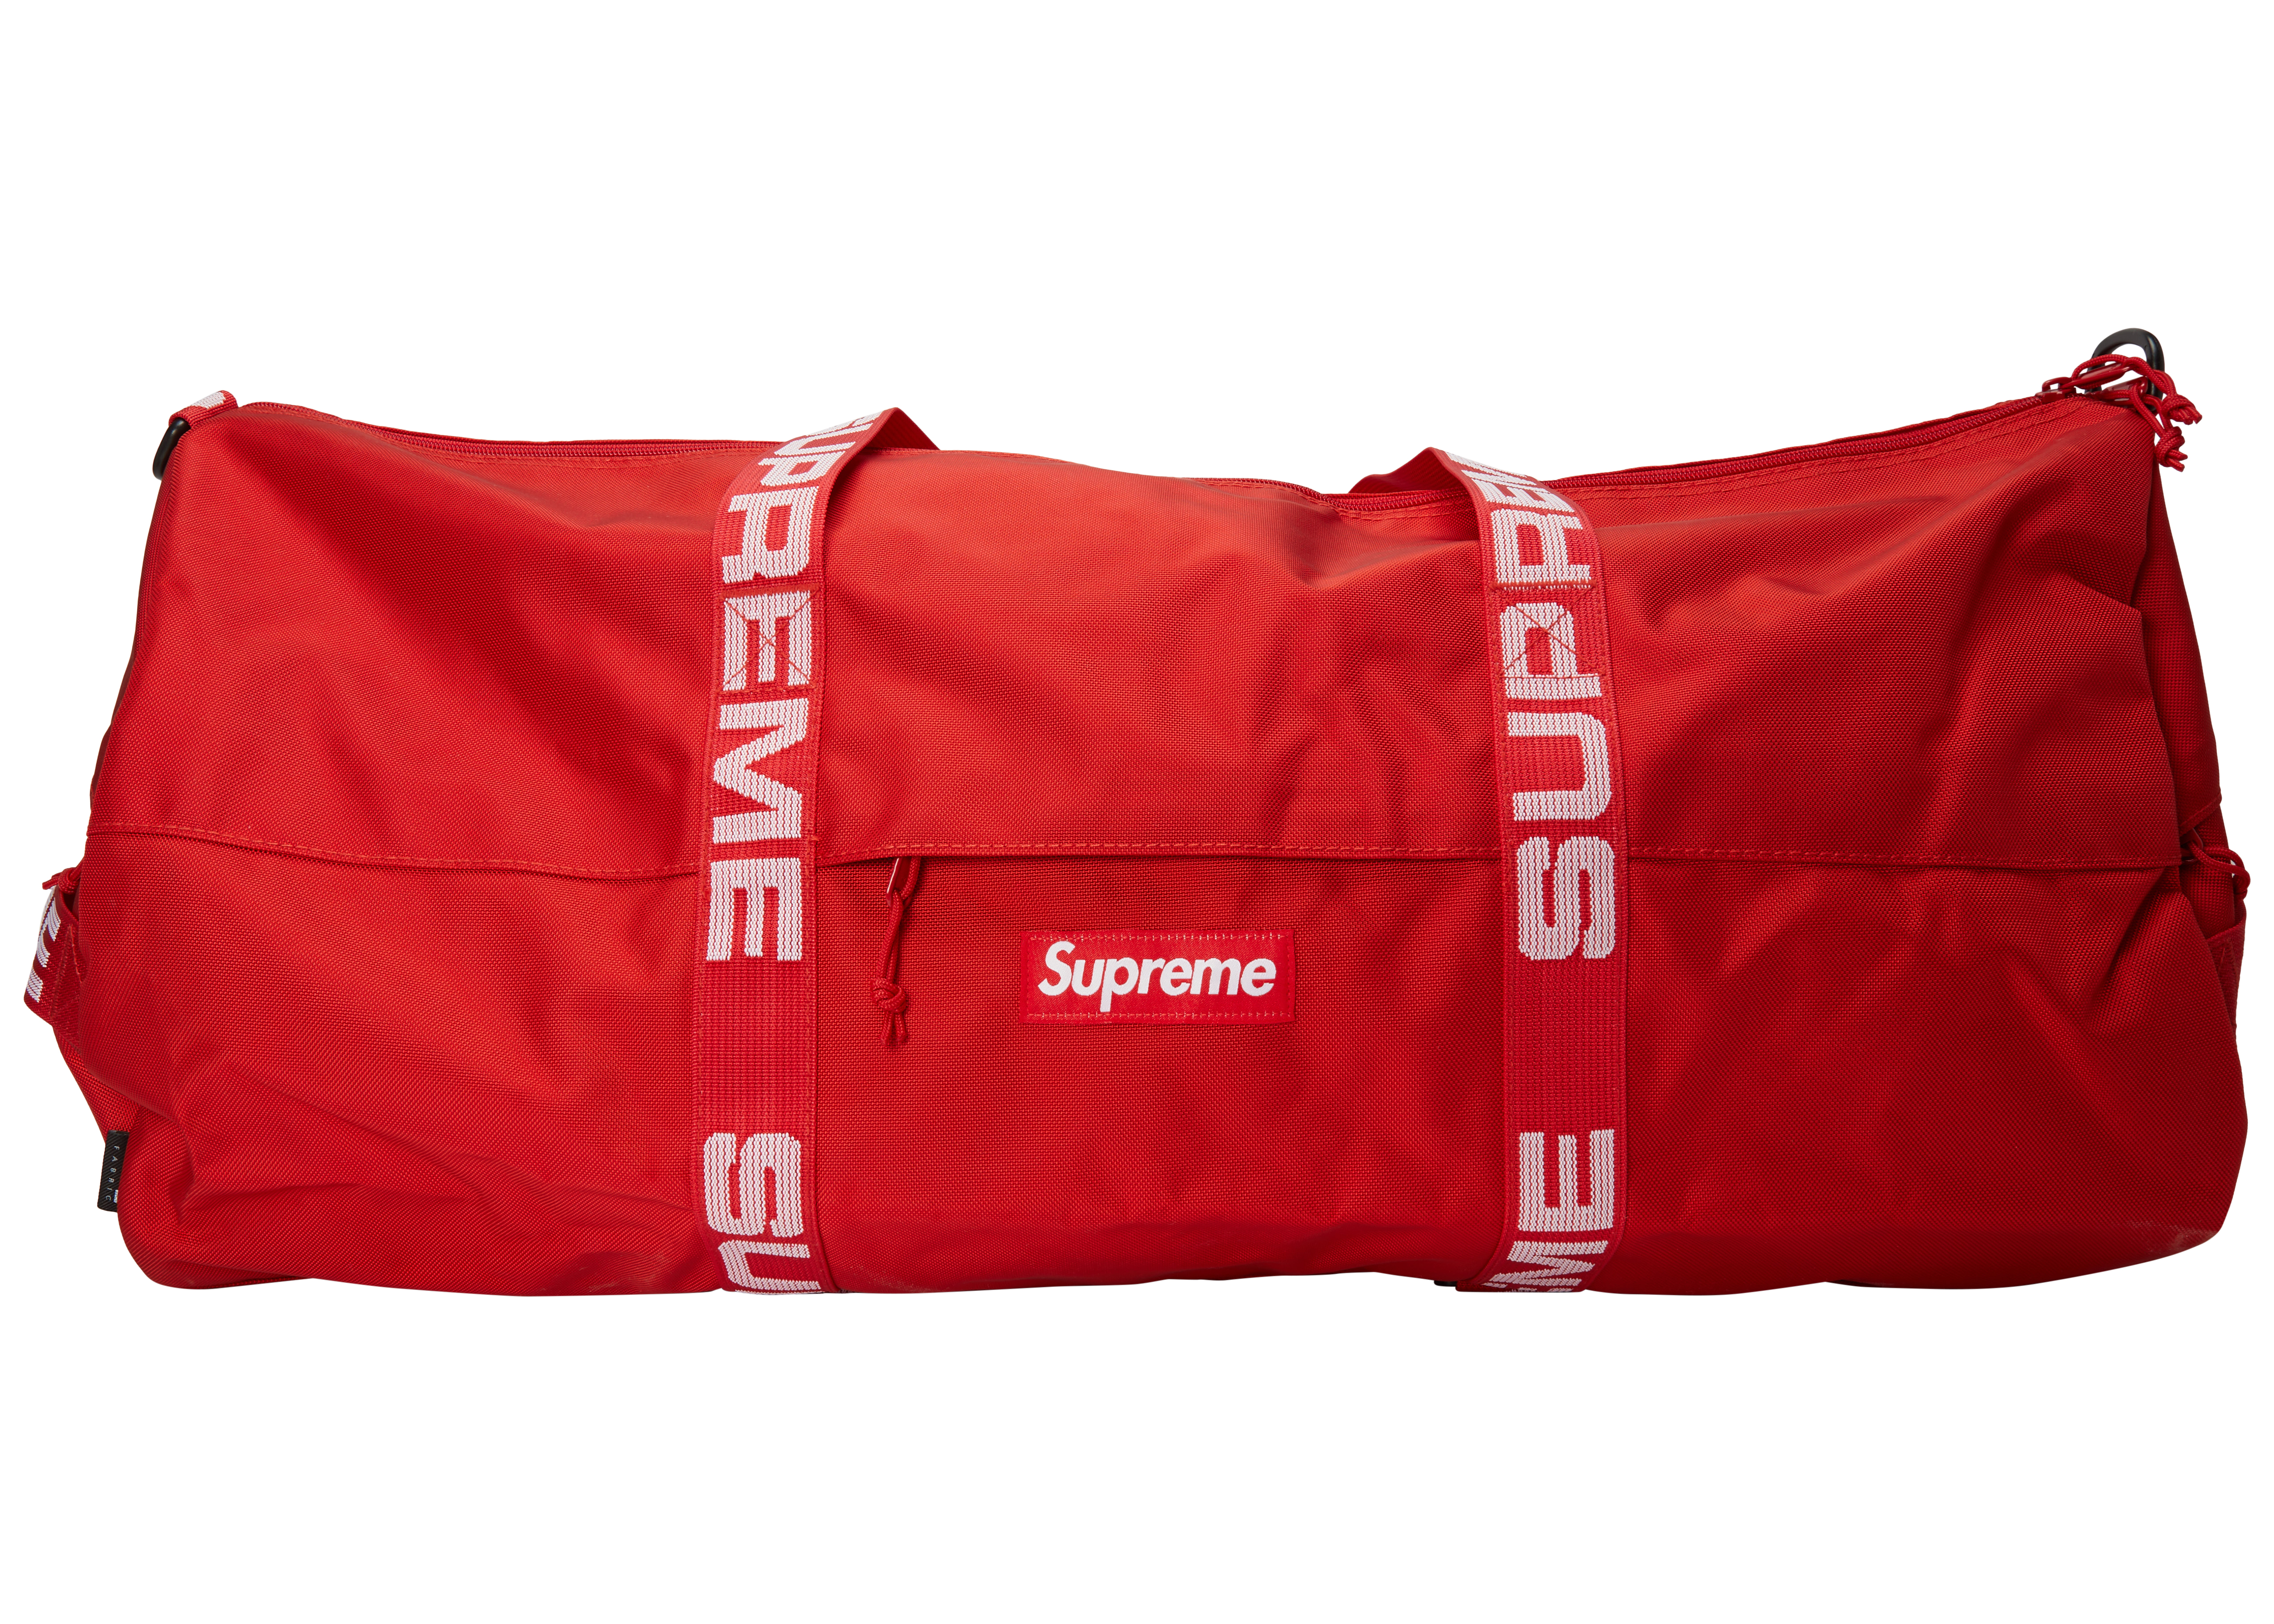 supreme 18aw week1 duffle bag red